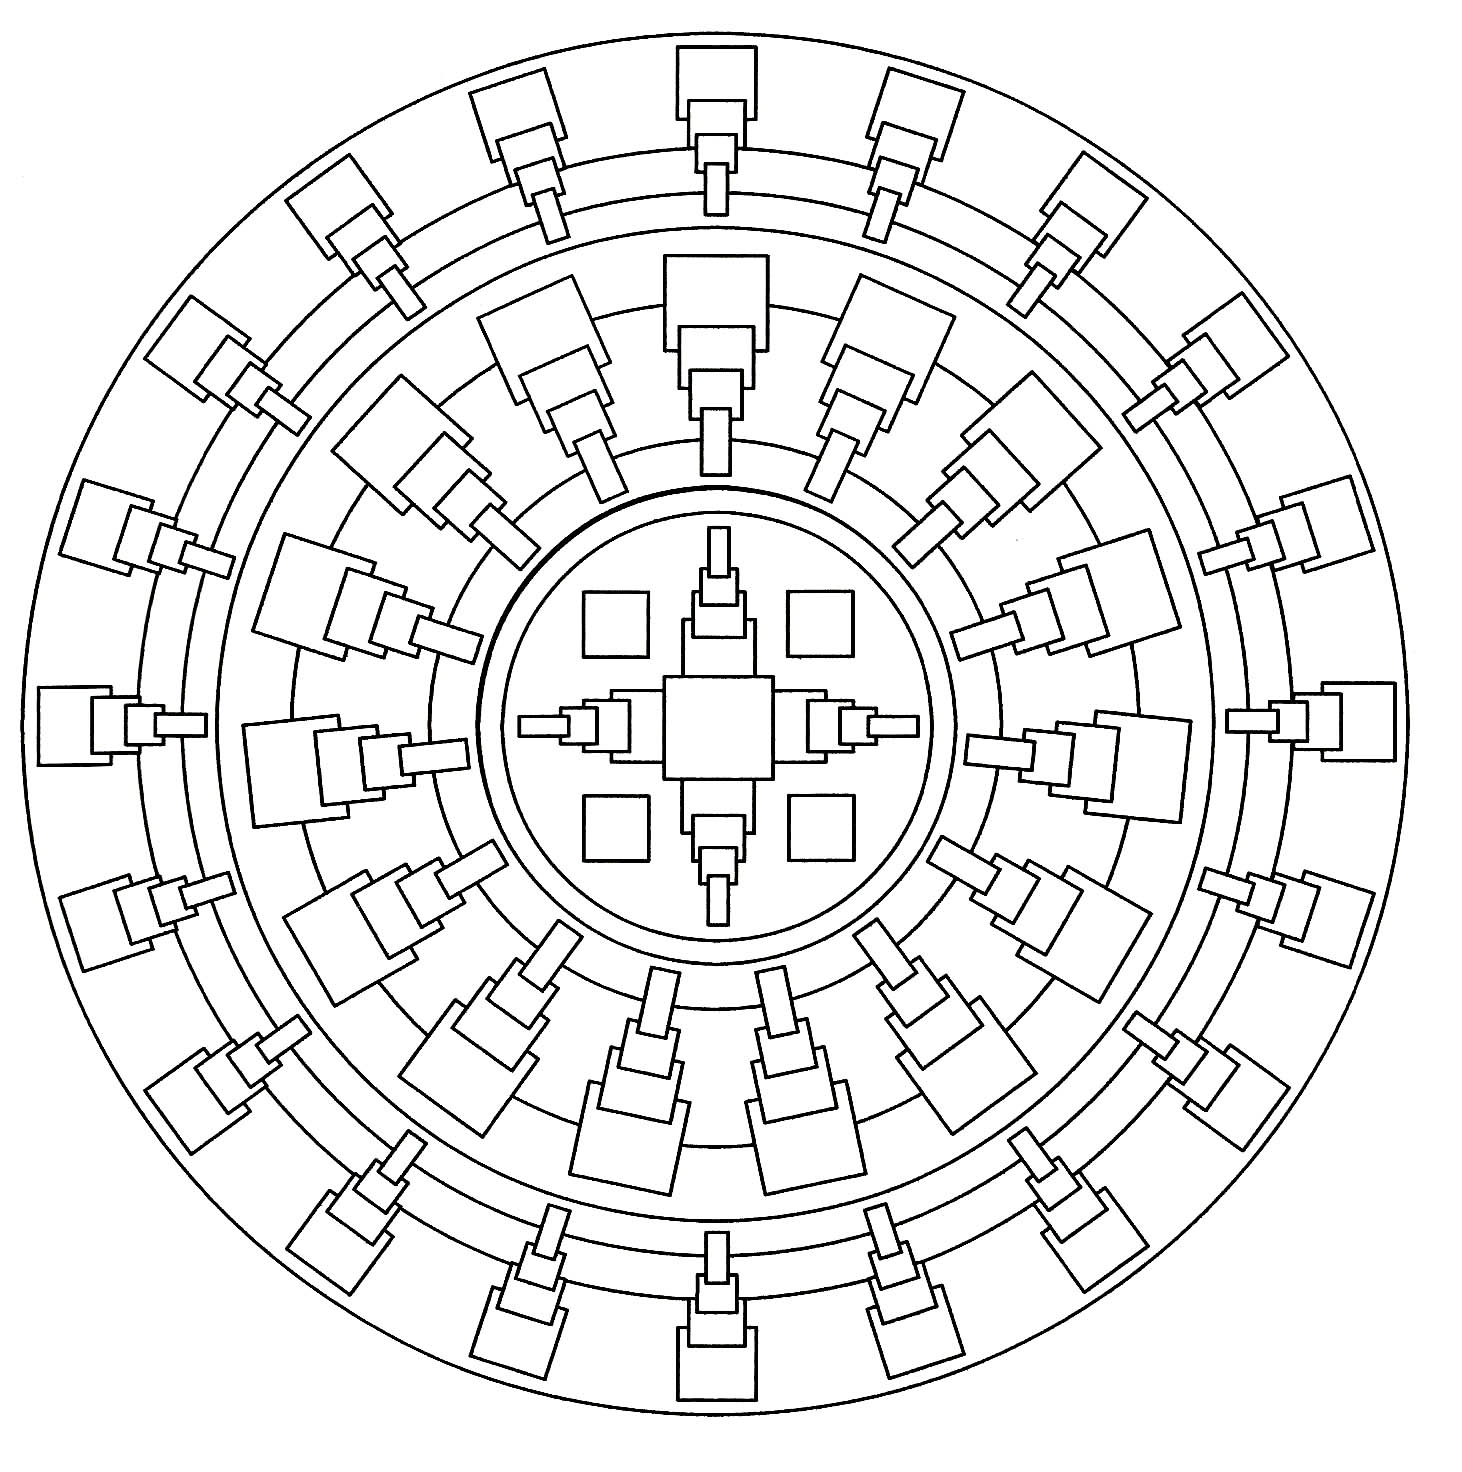 Ein einfaches Mandala mit quadratischen und symmetrischen Formen